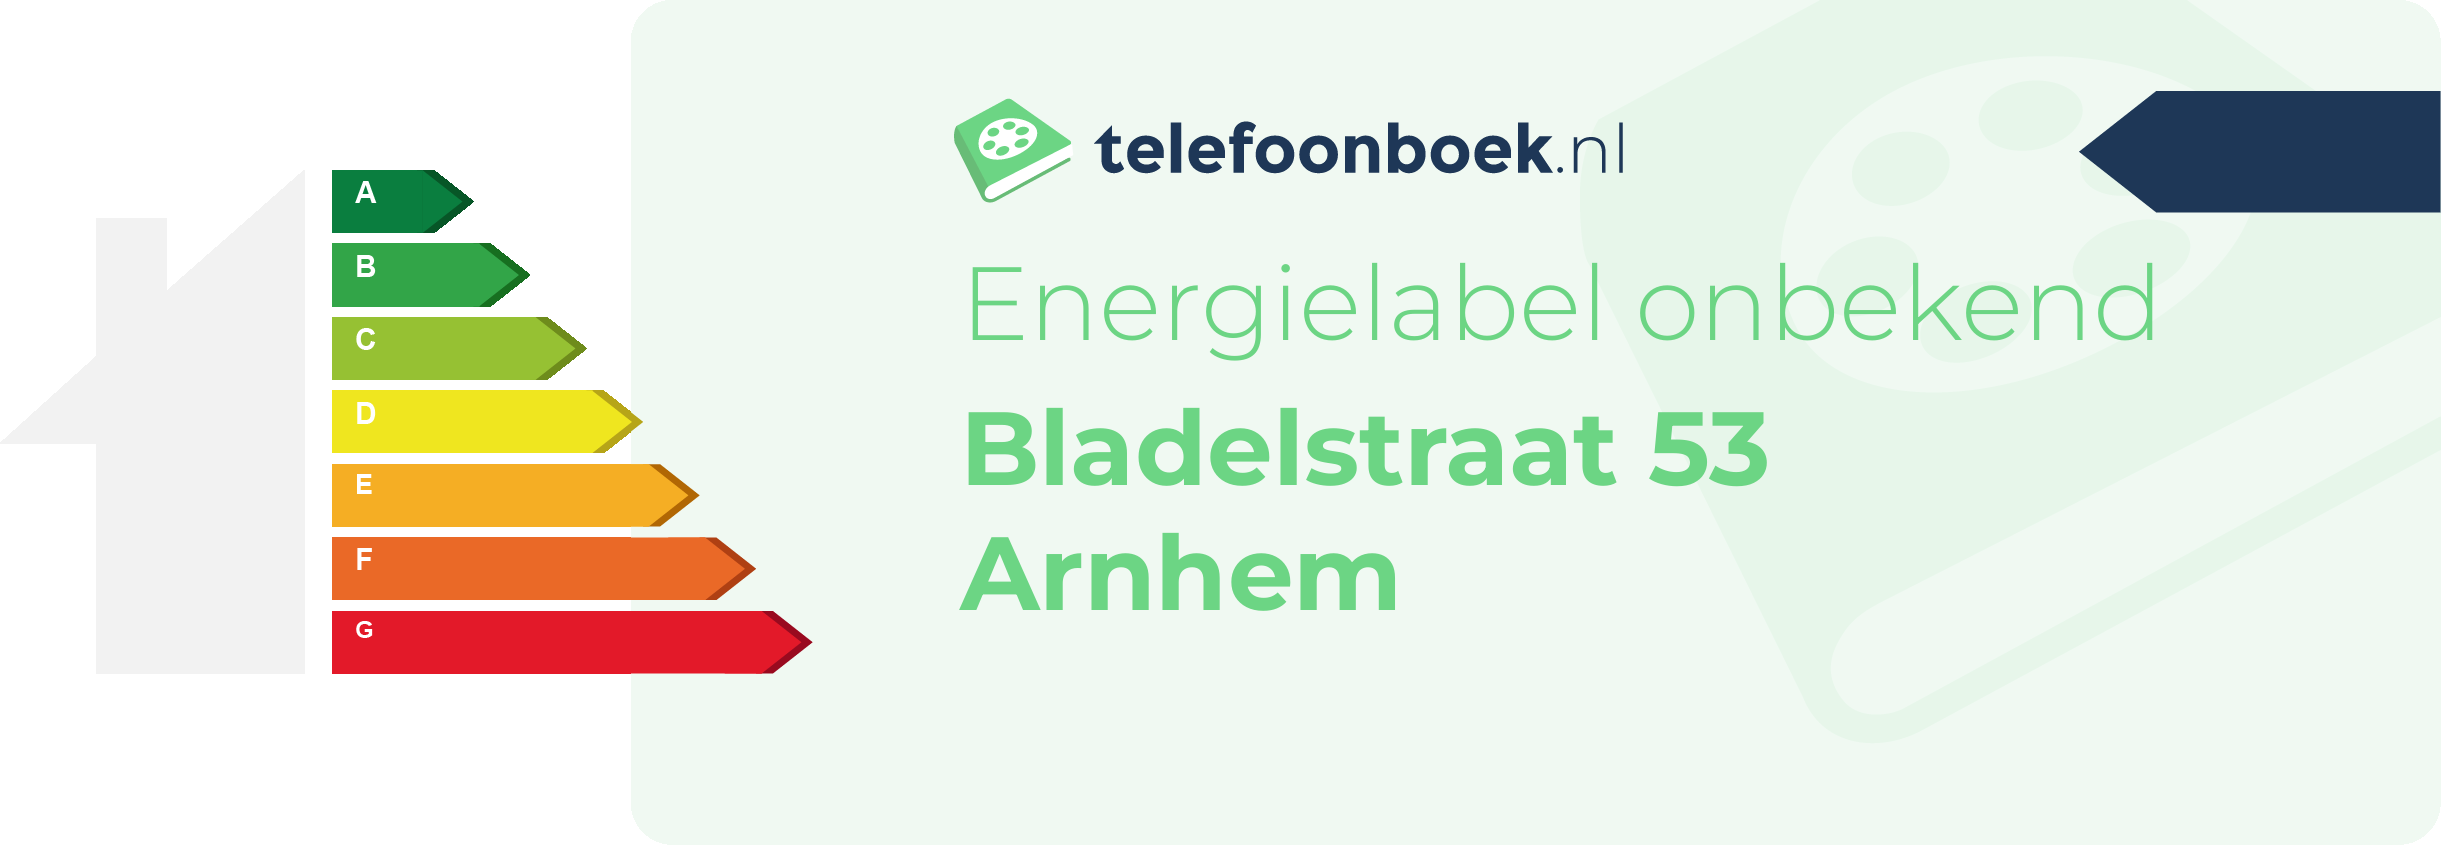 Energielabel Bladelstraat 53 Arnhem